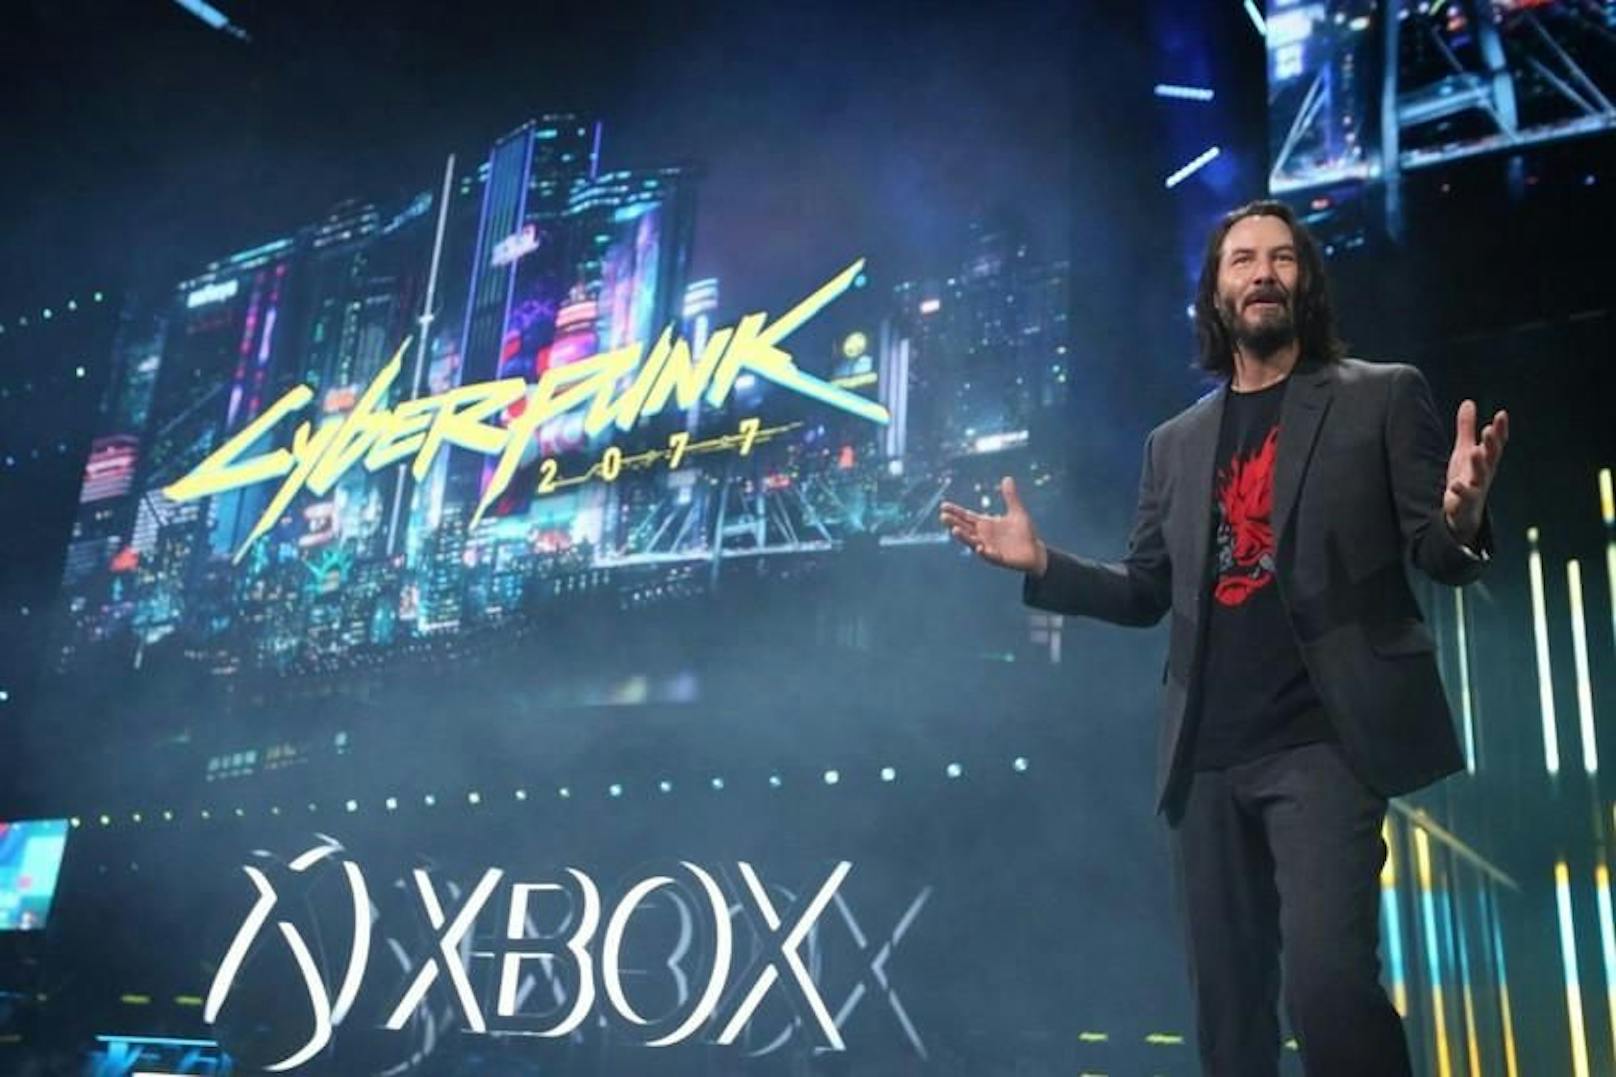 "You’re Breathtaking!" – Keanu Reeves stellte 2019 das heiß erwartete Game "Cyberpunk 2077" auf der E3 vor. Er war als Game-Figur darin präsent. 